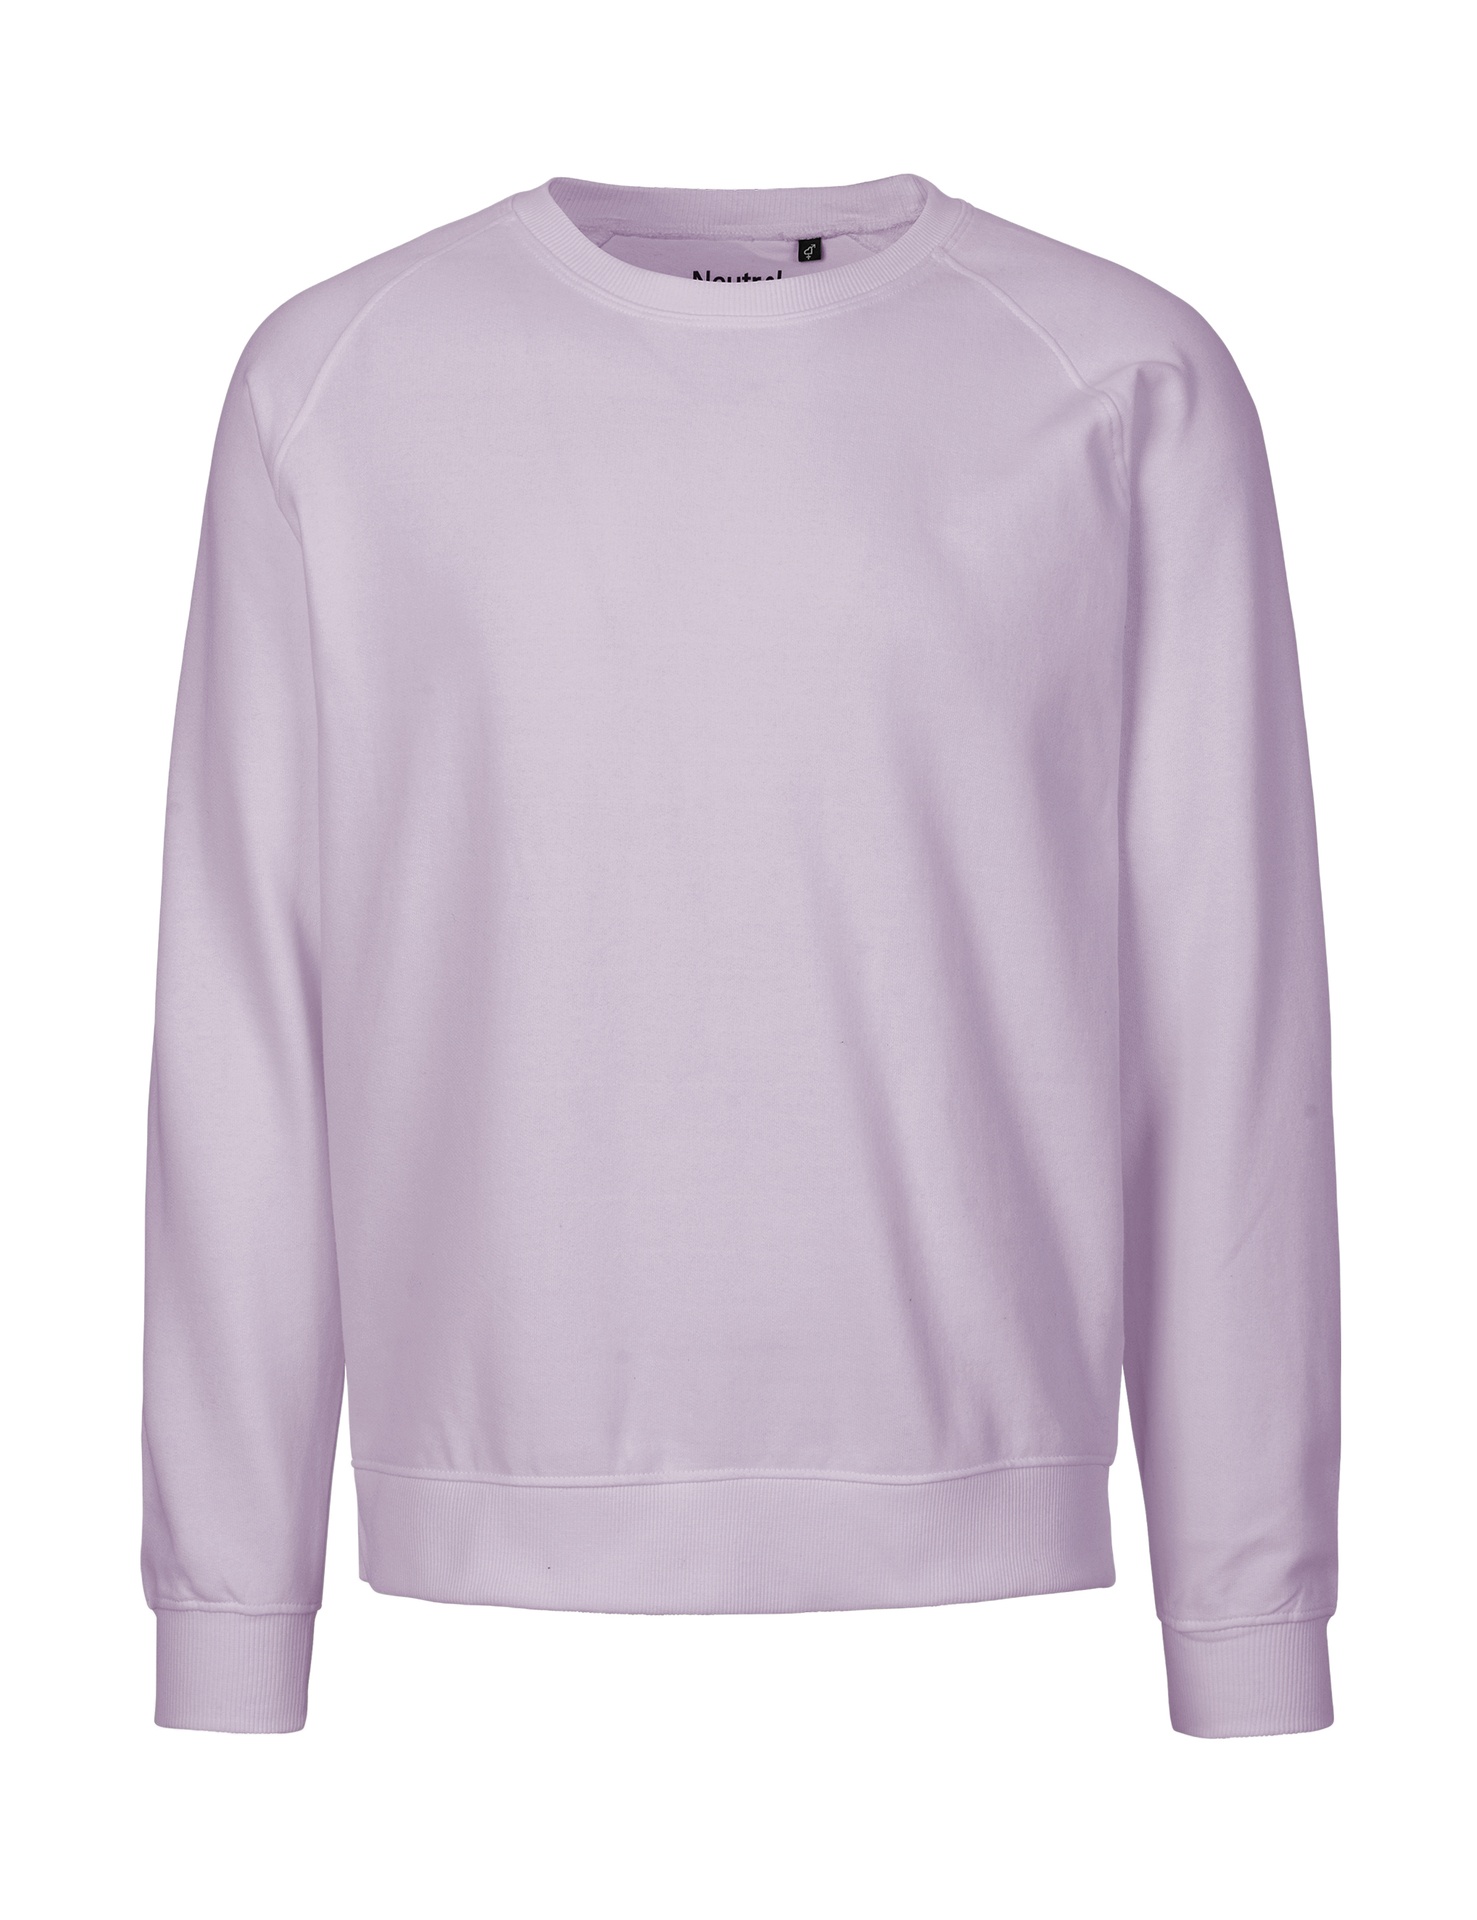 [PR/02843] Unisex Sweatshirt (Dusty Purple 42, M)